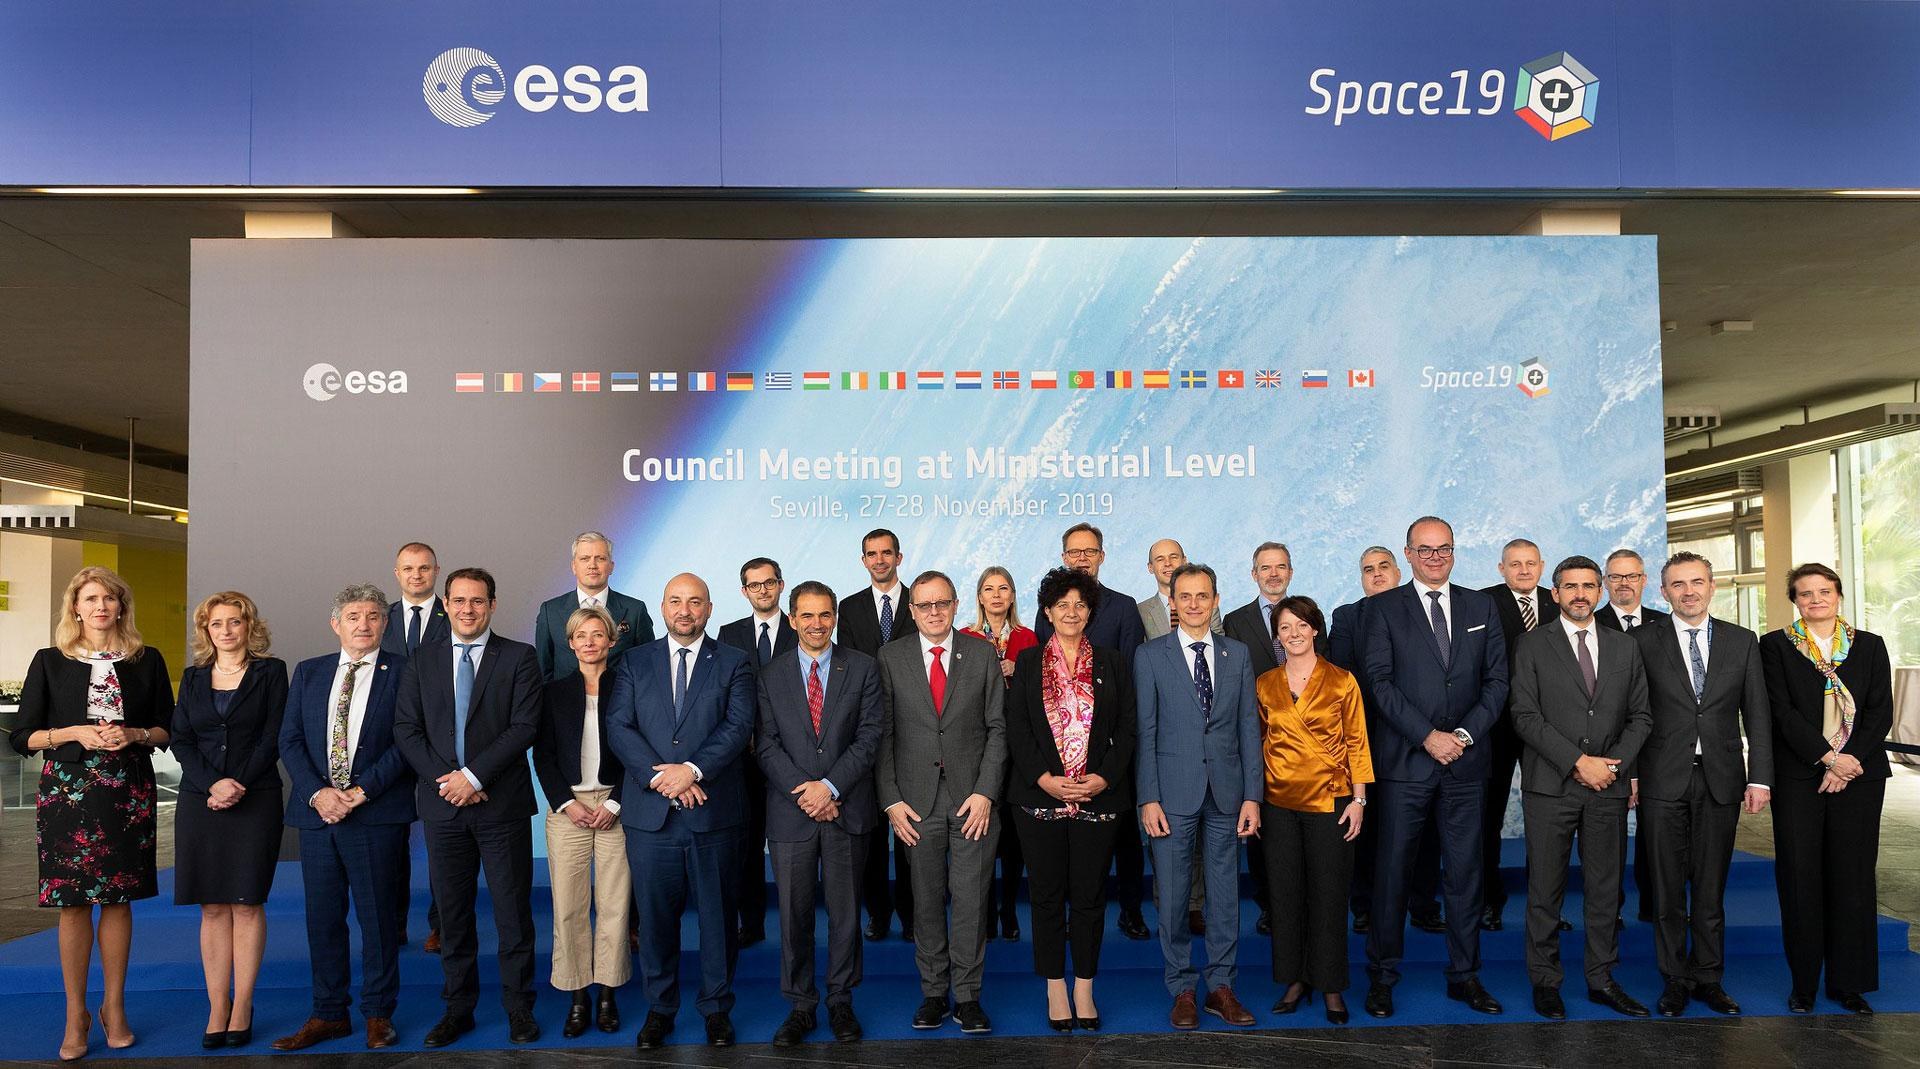 Offizielles Gruppenfoto: Die Ministerinnen und Minister der 22 ESA-Mitgliedsstaaten